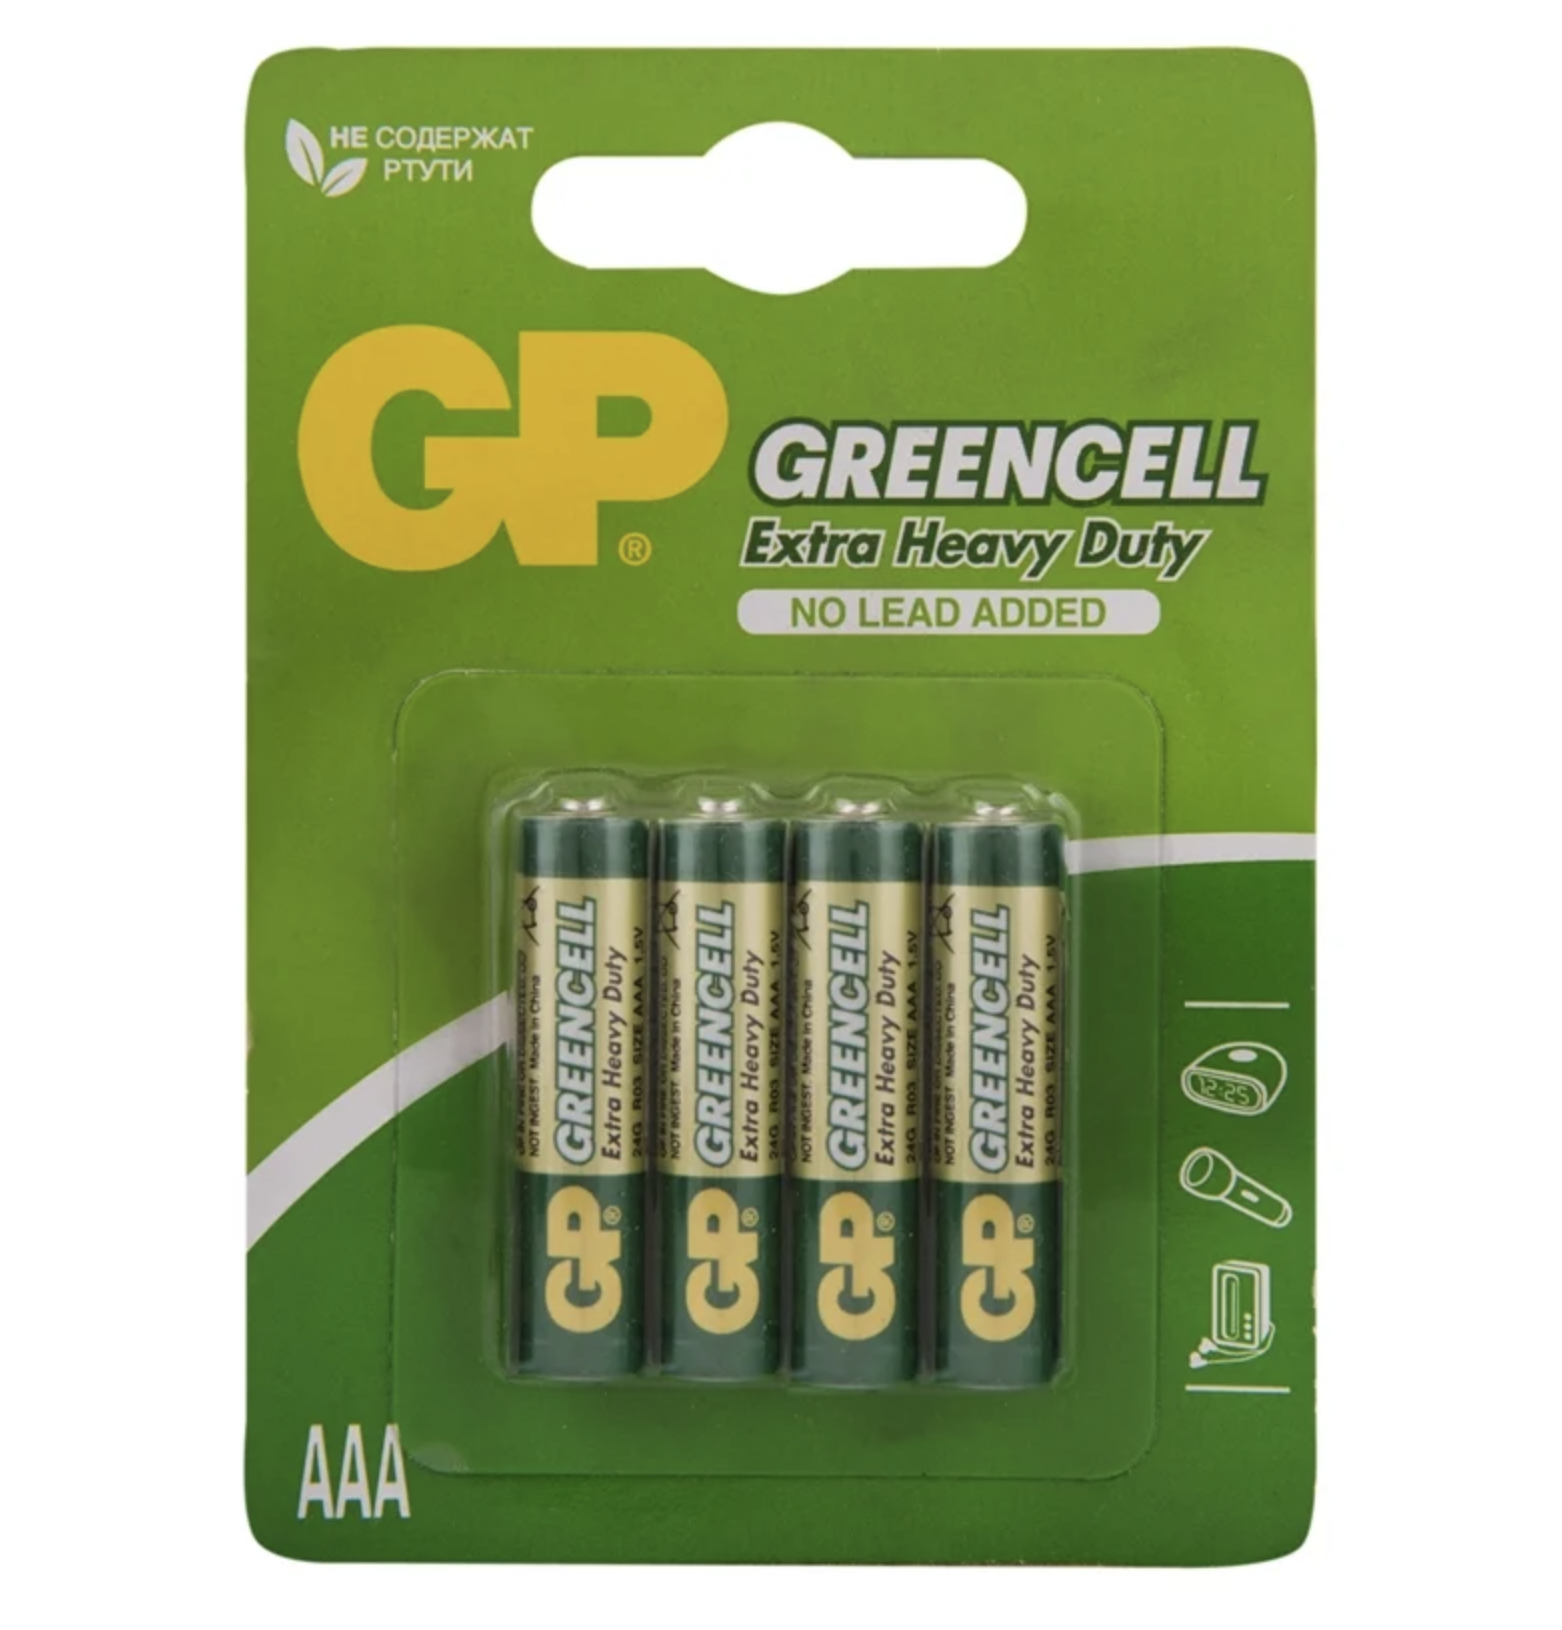  GP -  Greencell Extra Heavy Duty R03 AAA 1.5V 4 